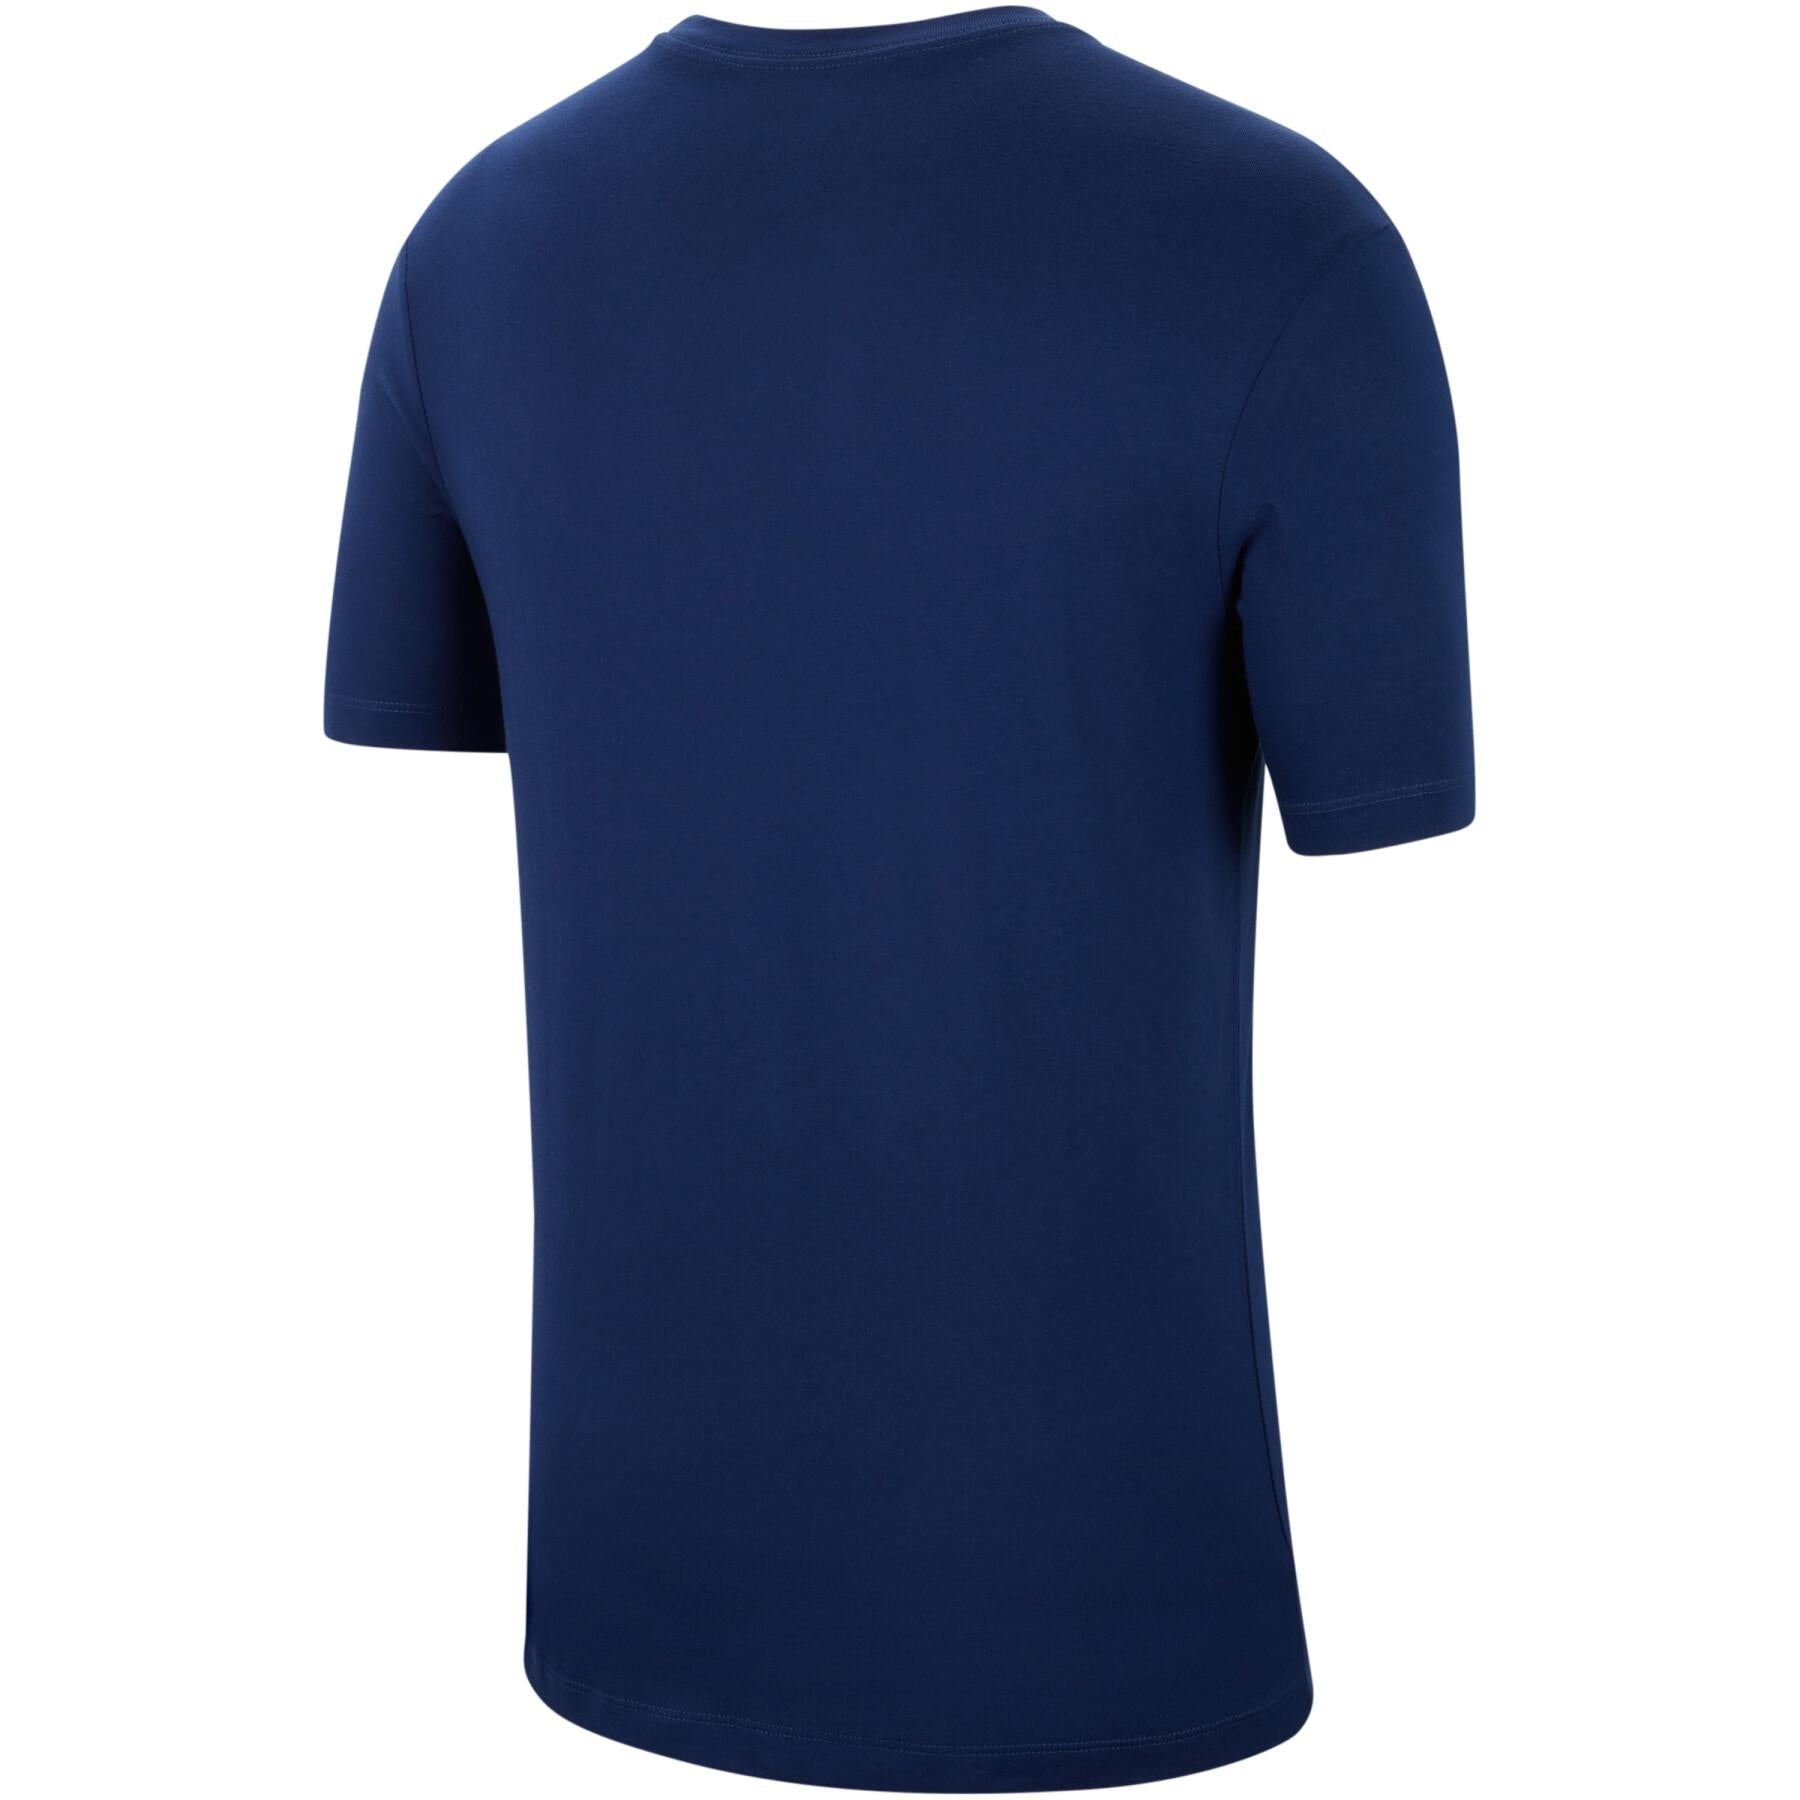 Nike Men's Atlético Madrid Crest Soccer T-Shirt - Blue